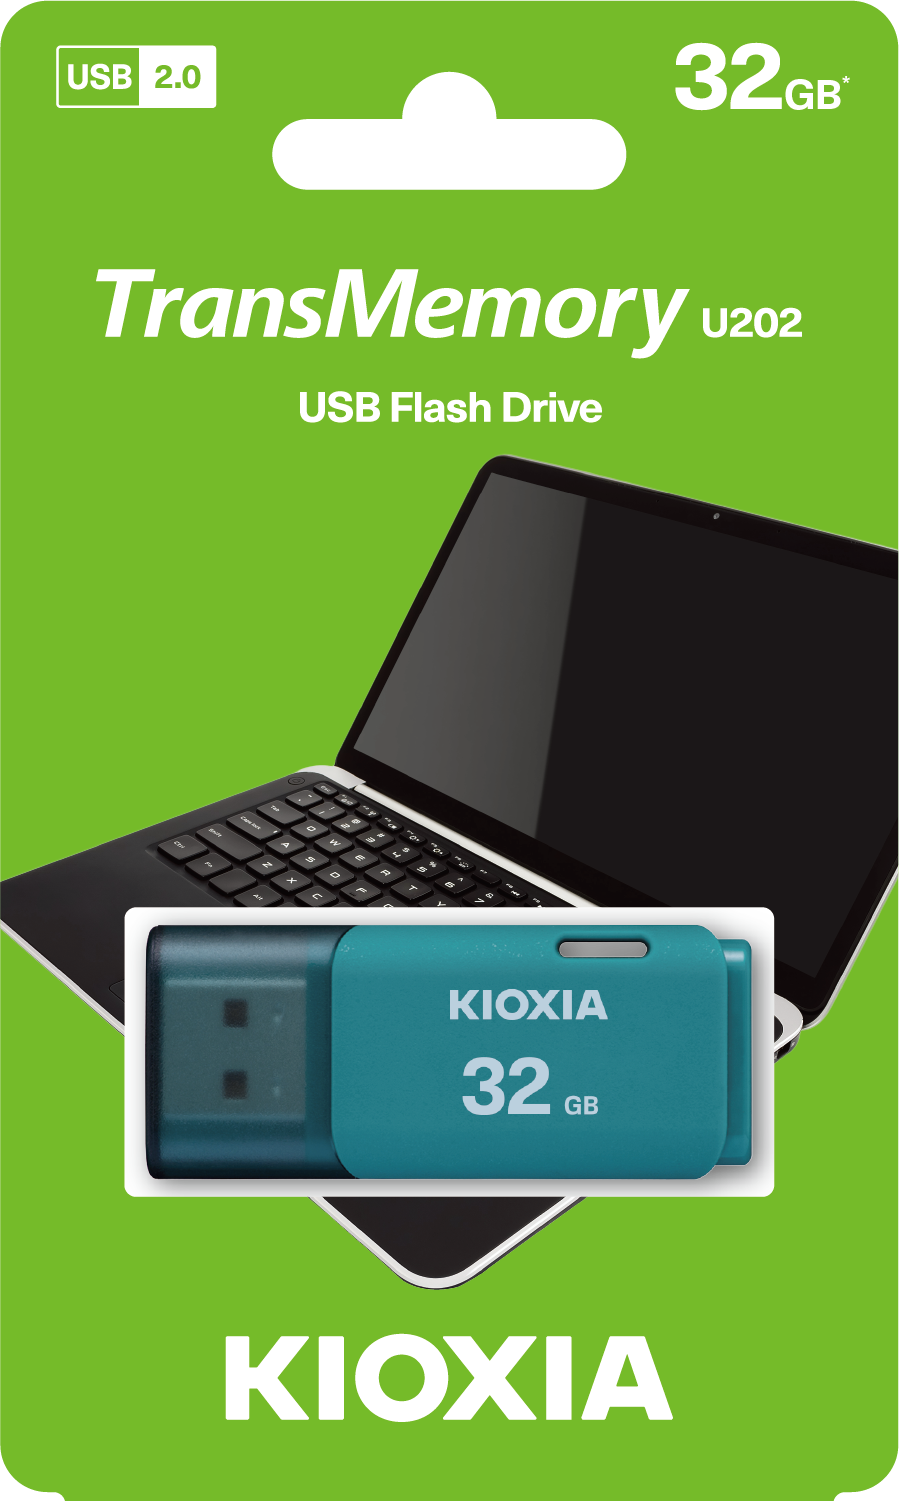 KIOXIA Transmemory U202 usb flash drive blue 32GB